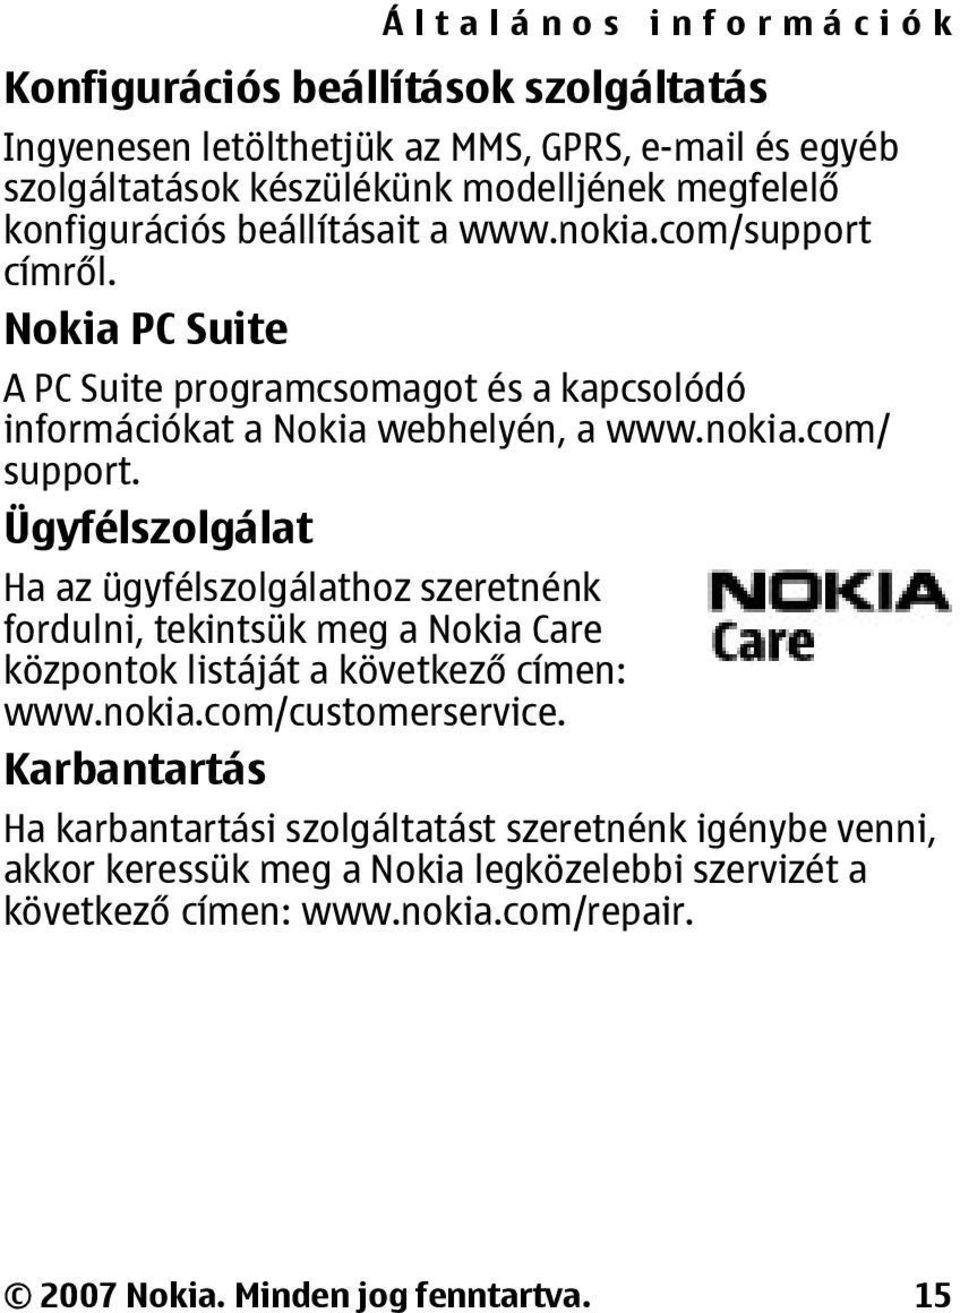 Ügyfélszolgálat Ha az ügyfélszolgálathoz szeretnénk fordulni, tekintsük meg a Nokia Care központok listáját a következő címen: www.nokia.com/customerservice.